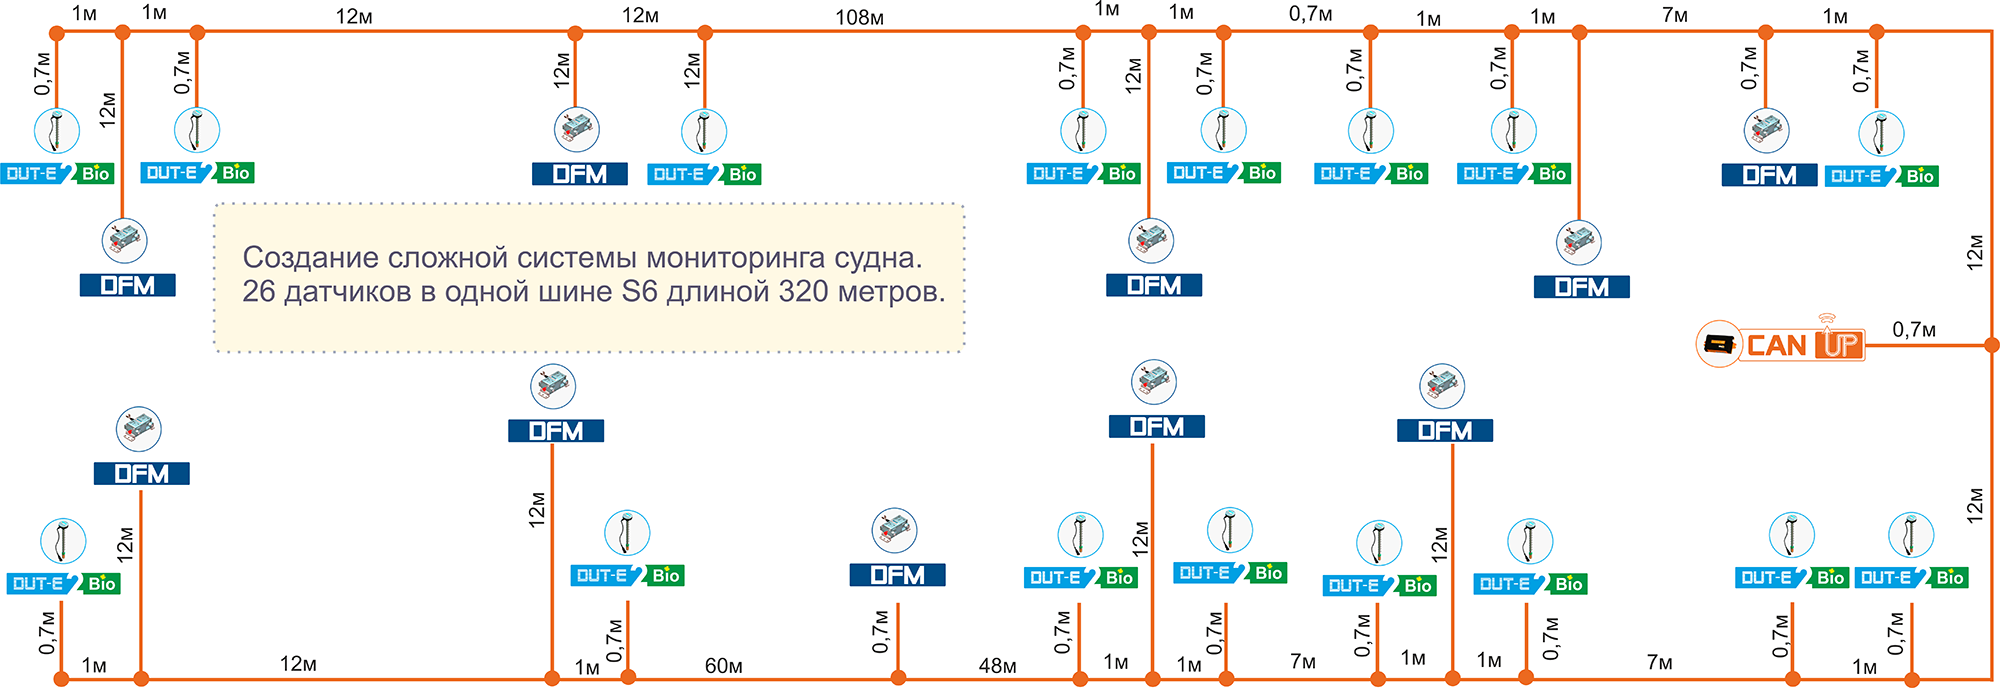 Схема сложной системы мониторинга судна